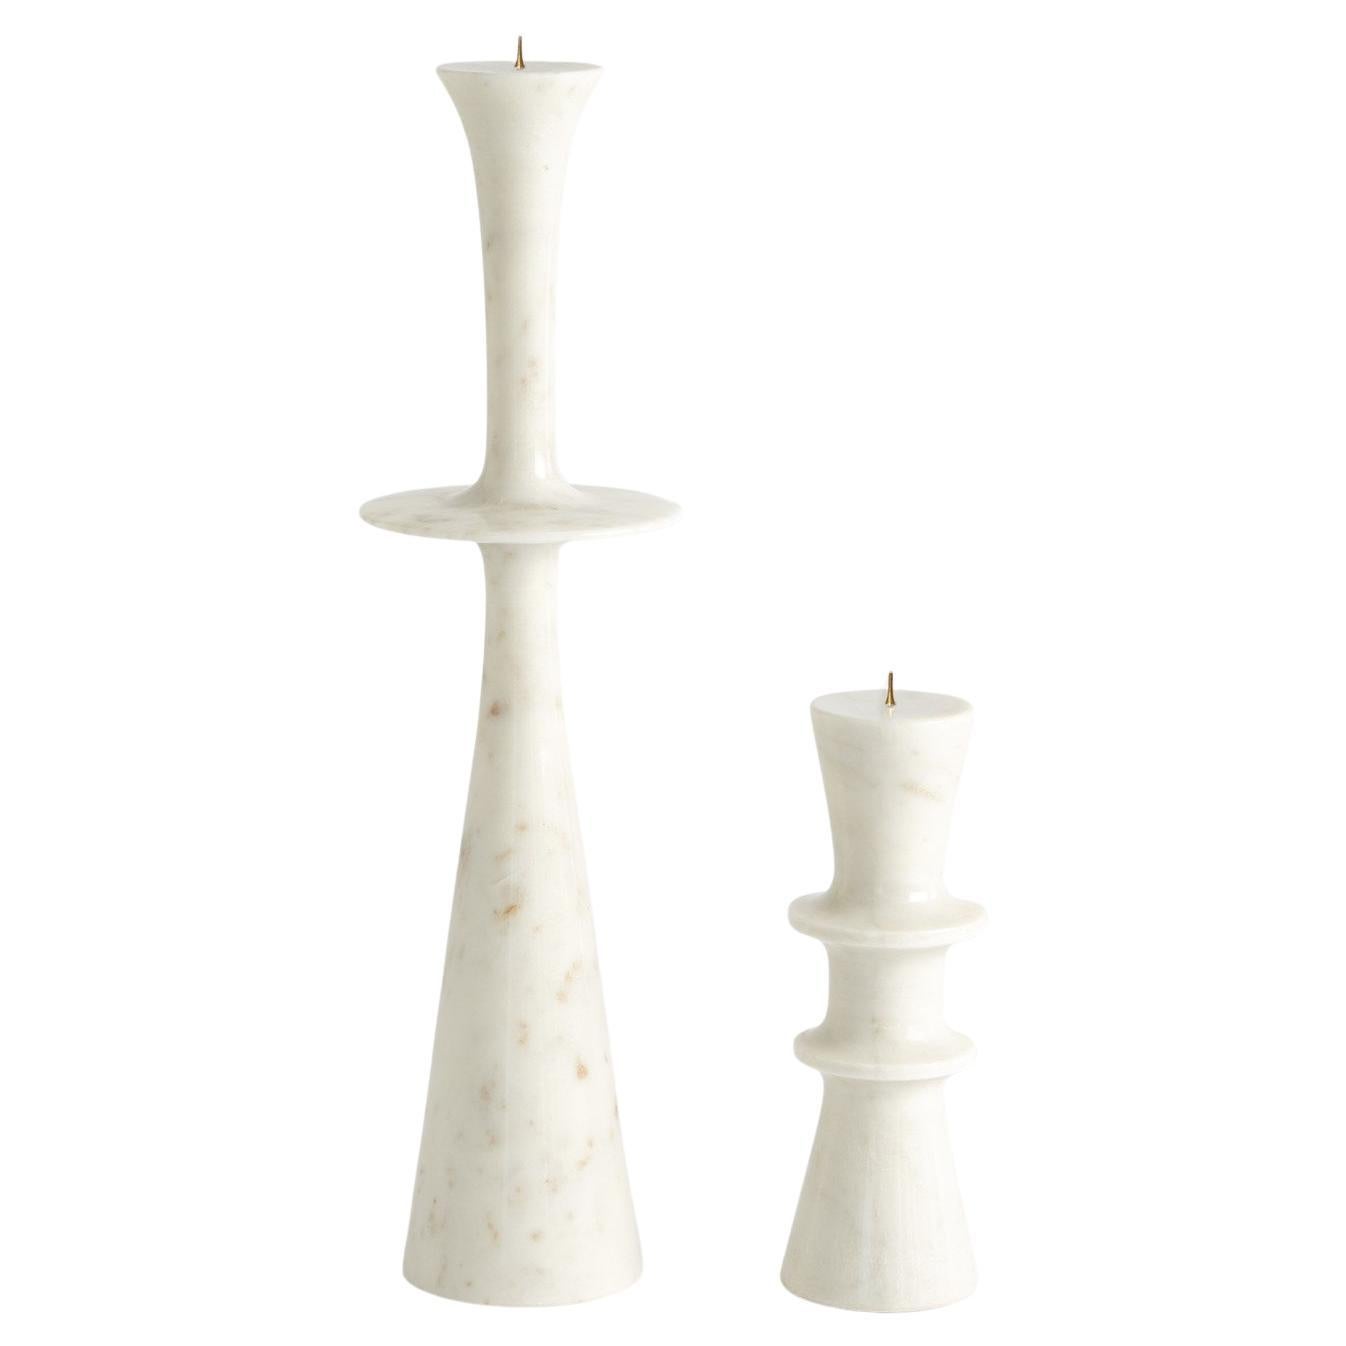 Flair-Kerzenständer aus weißem Marmor, bezogen von Martyn Lawrence Bullard
Aus handgeformtem Marmor mit eisernem Kerzenständer